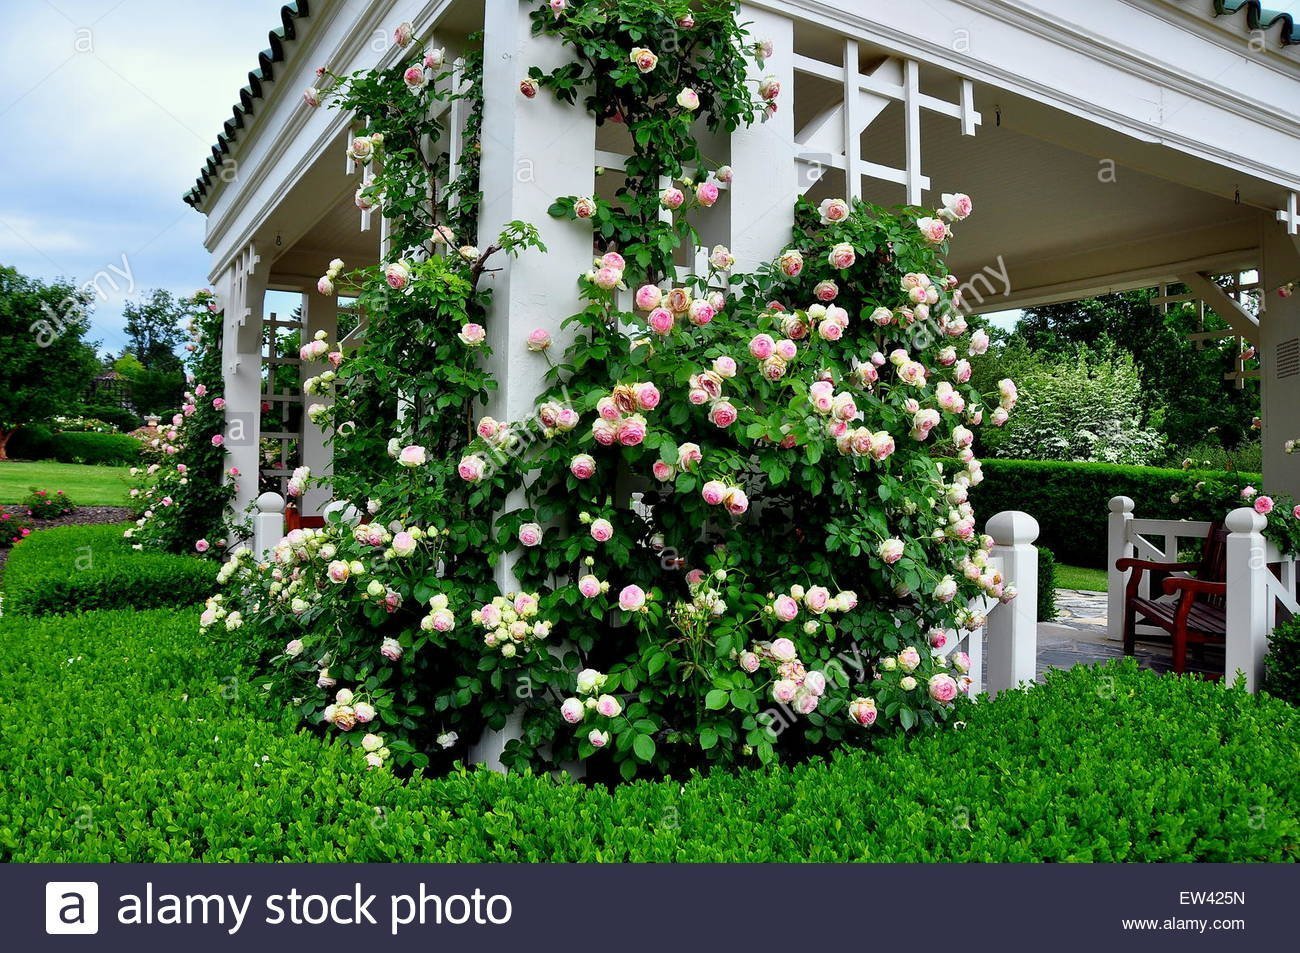 Плетистые розы в ландшафтном дизайне - 69 фото